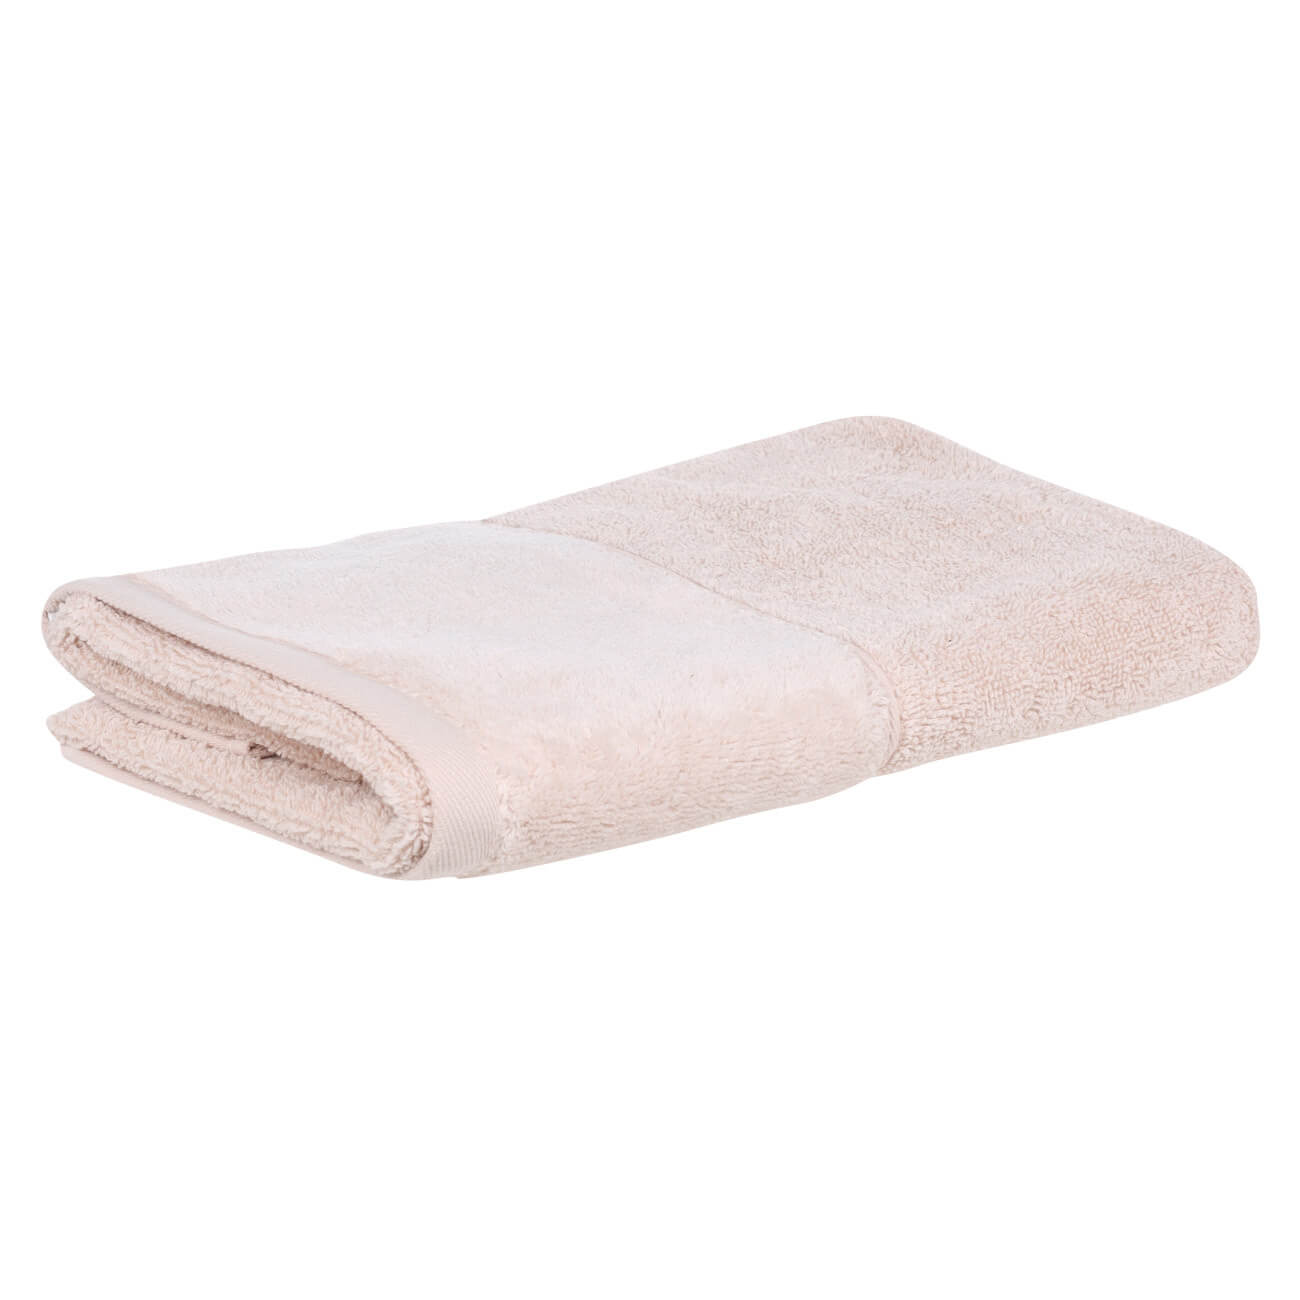 Полотенце, 50х90 см, хлопок, бежевое, Velvet touch полотенце eumenia 100x150 см серое